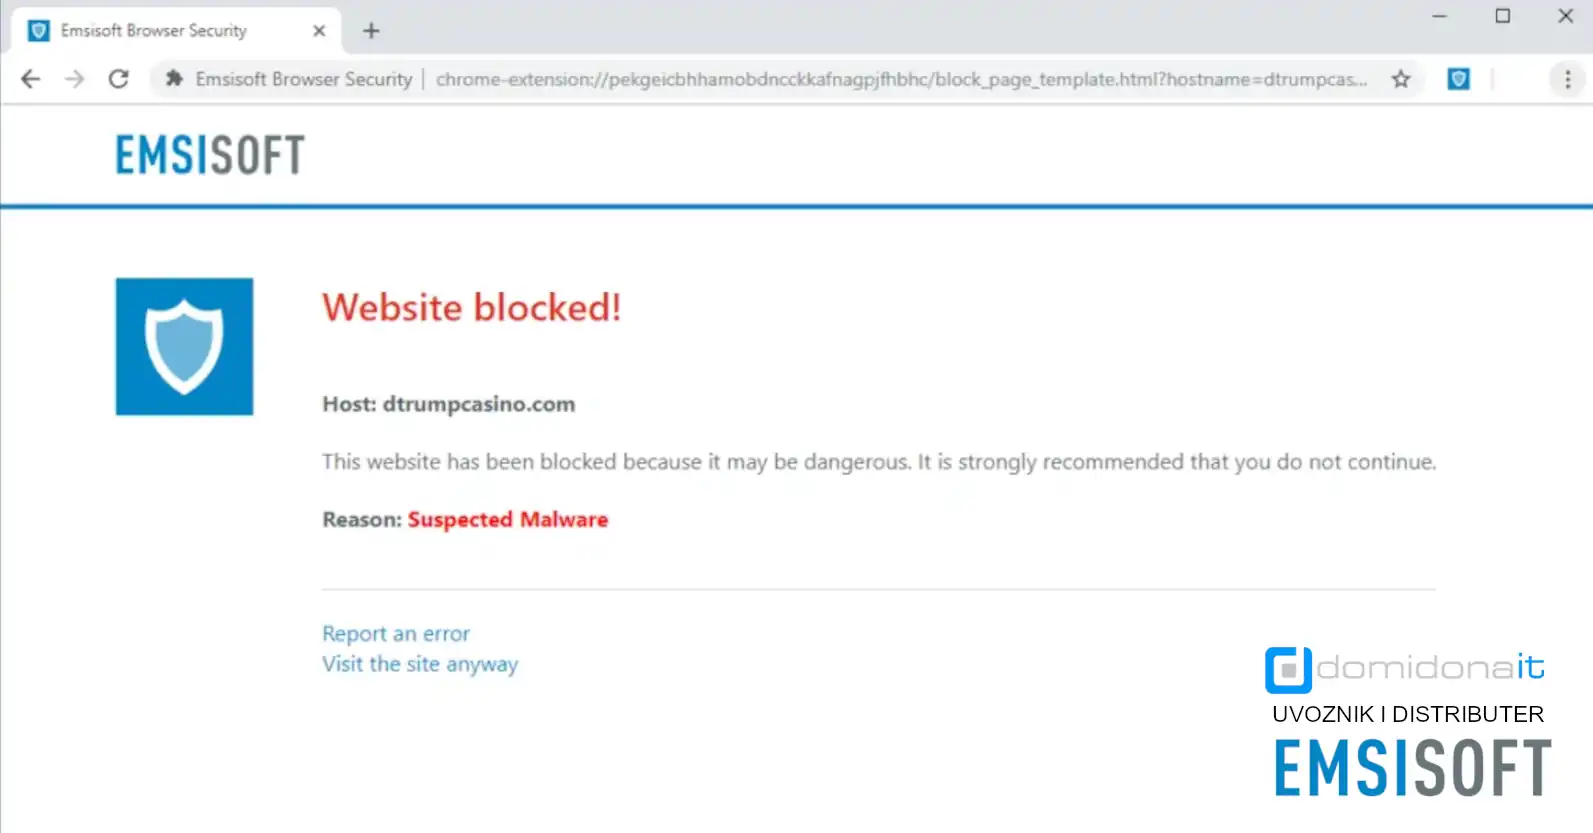 Emsisoft Browser Security blokirao je web mjesto za krađu identiteta